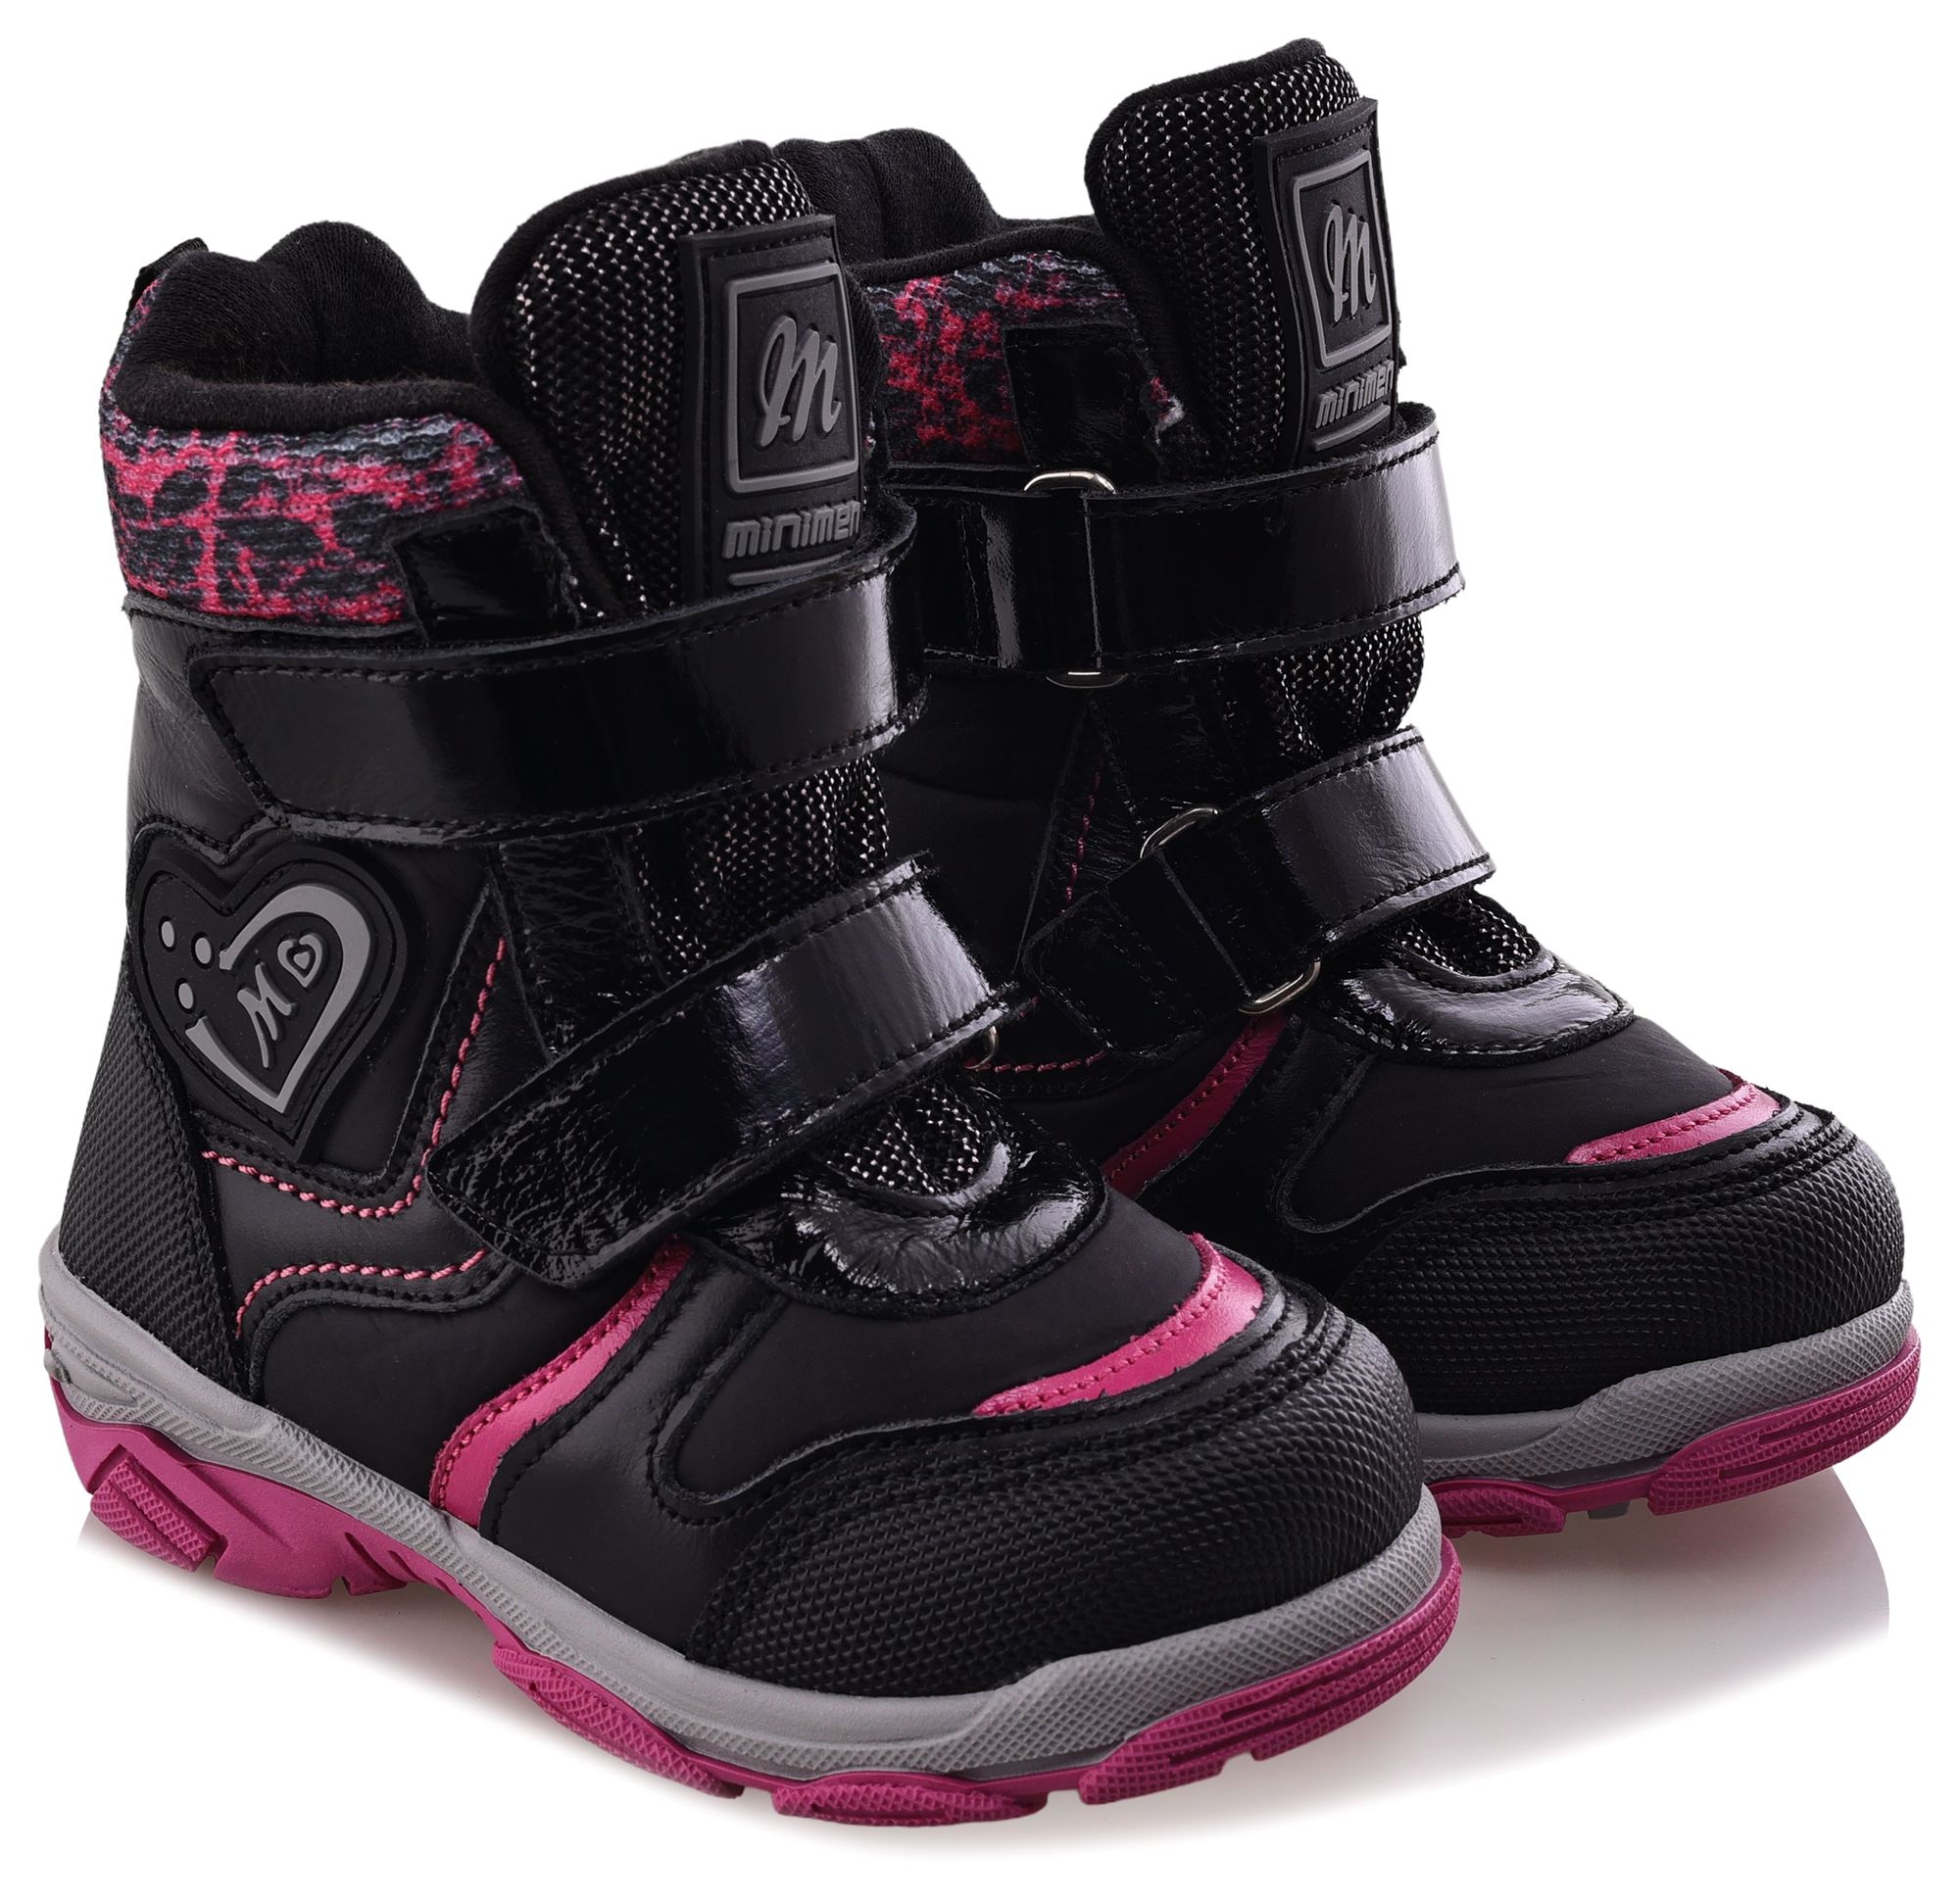 Ботинки Minimen для девочек, чёрные, размер 34, 2656-54-23B-01 ботинки minimen для девочек розовые размер 27 2656 53 23b 02